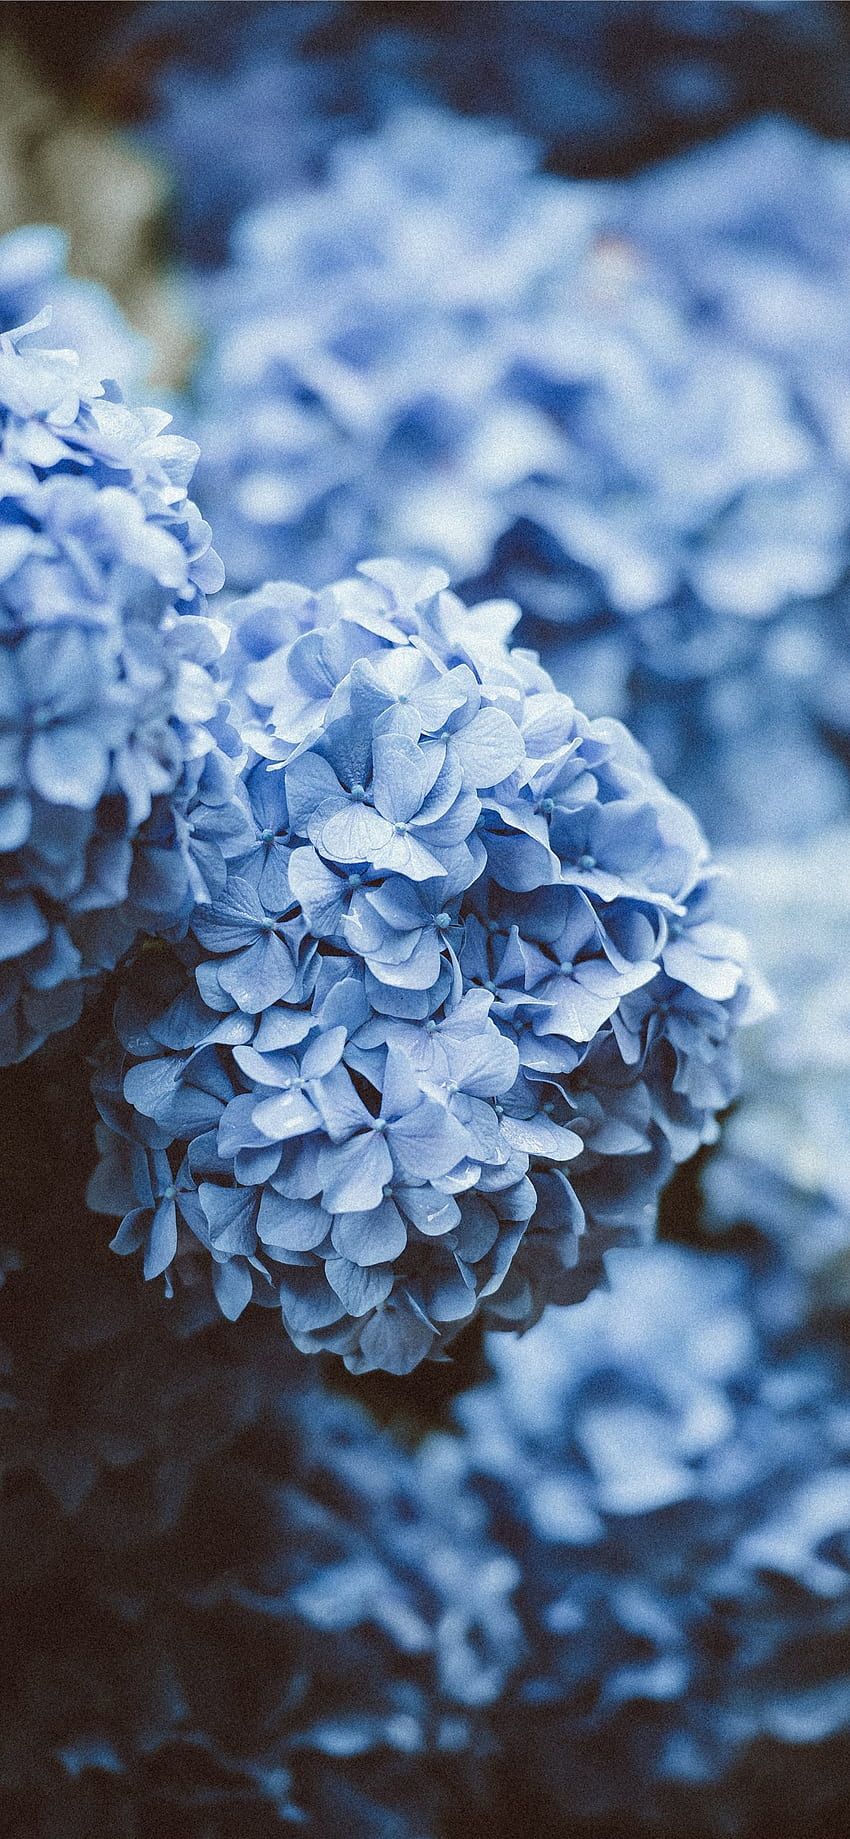  Blumen Blau Hintergrundbild 850x1839. Blaue Blumen IPhone Hellblaue Blume HD Handy Hintergrundbild